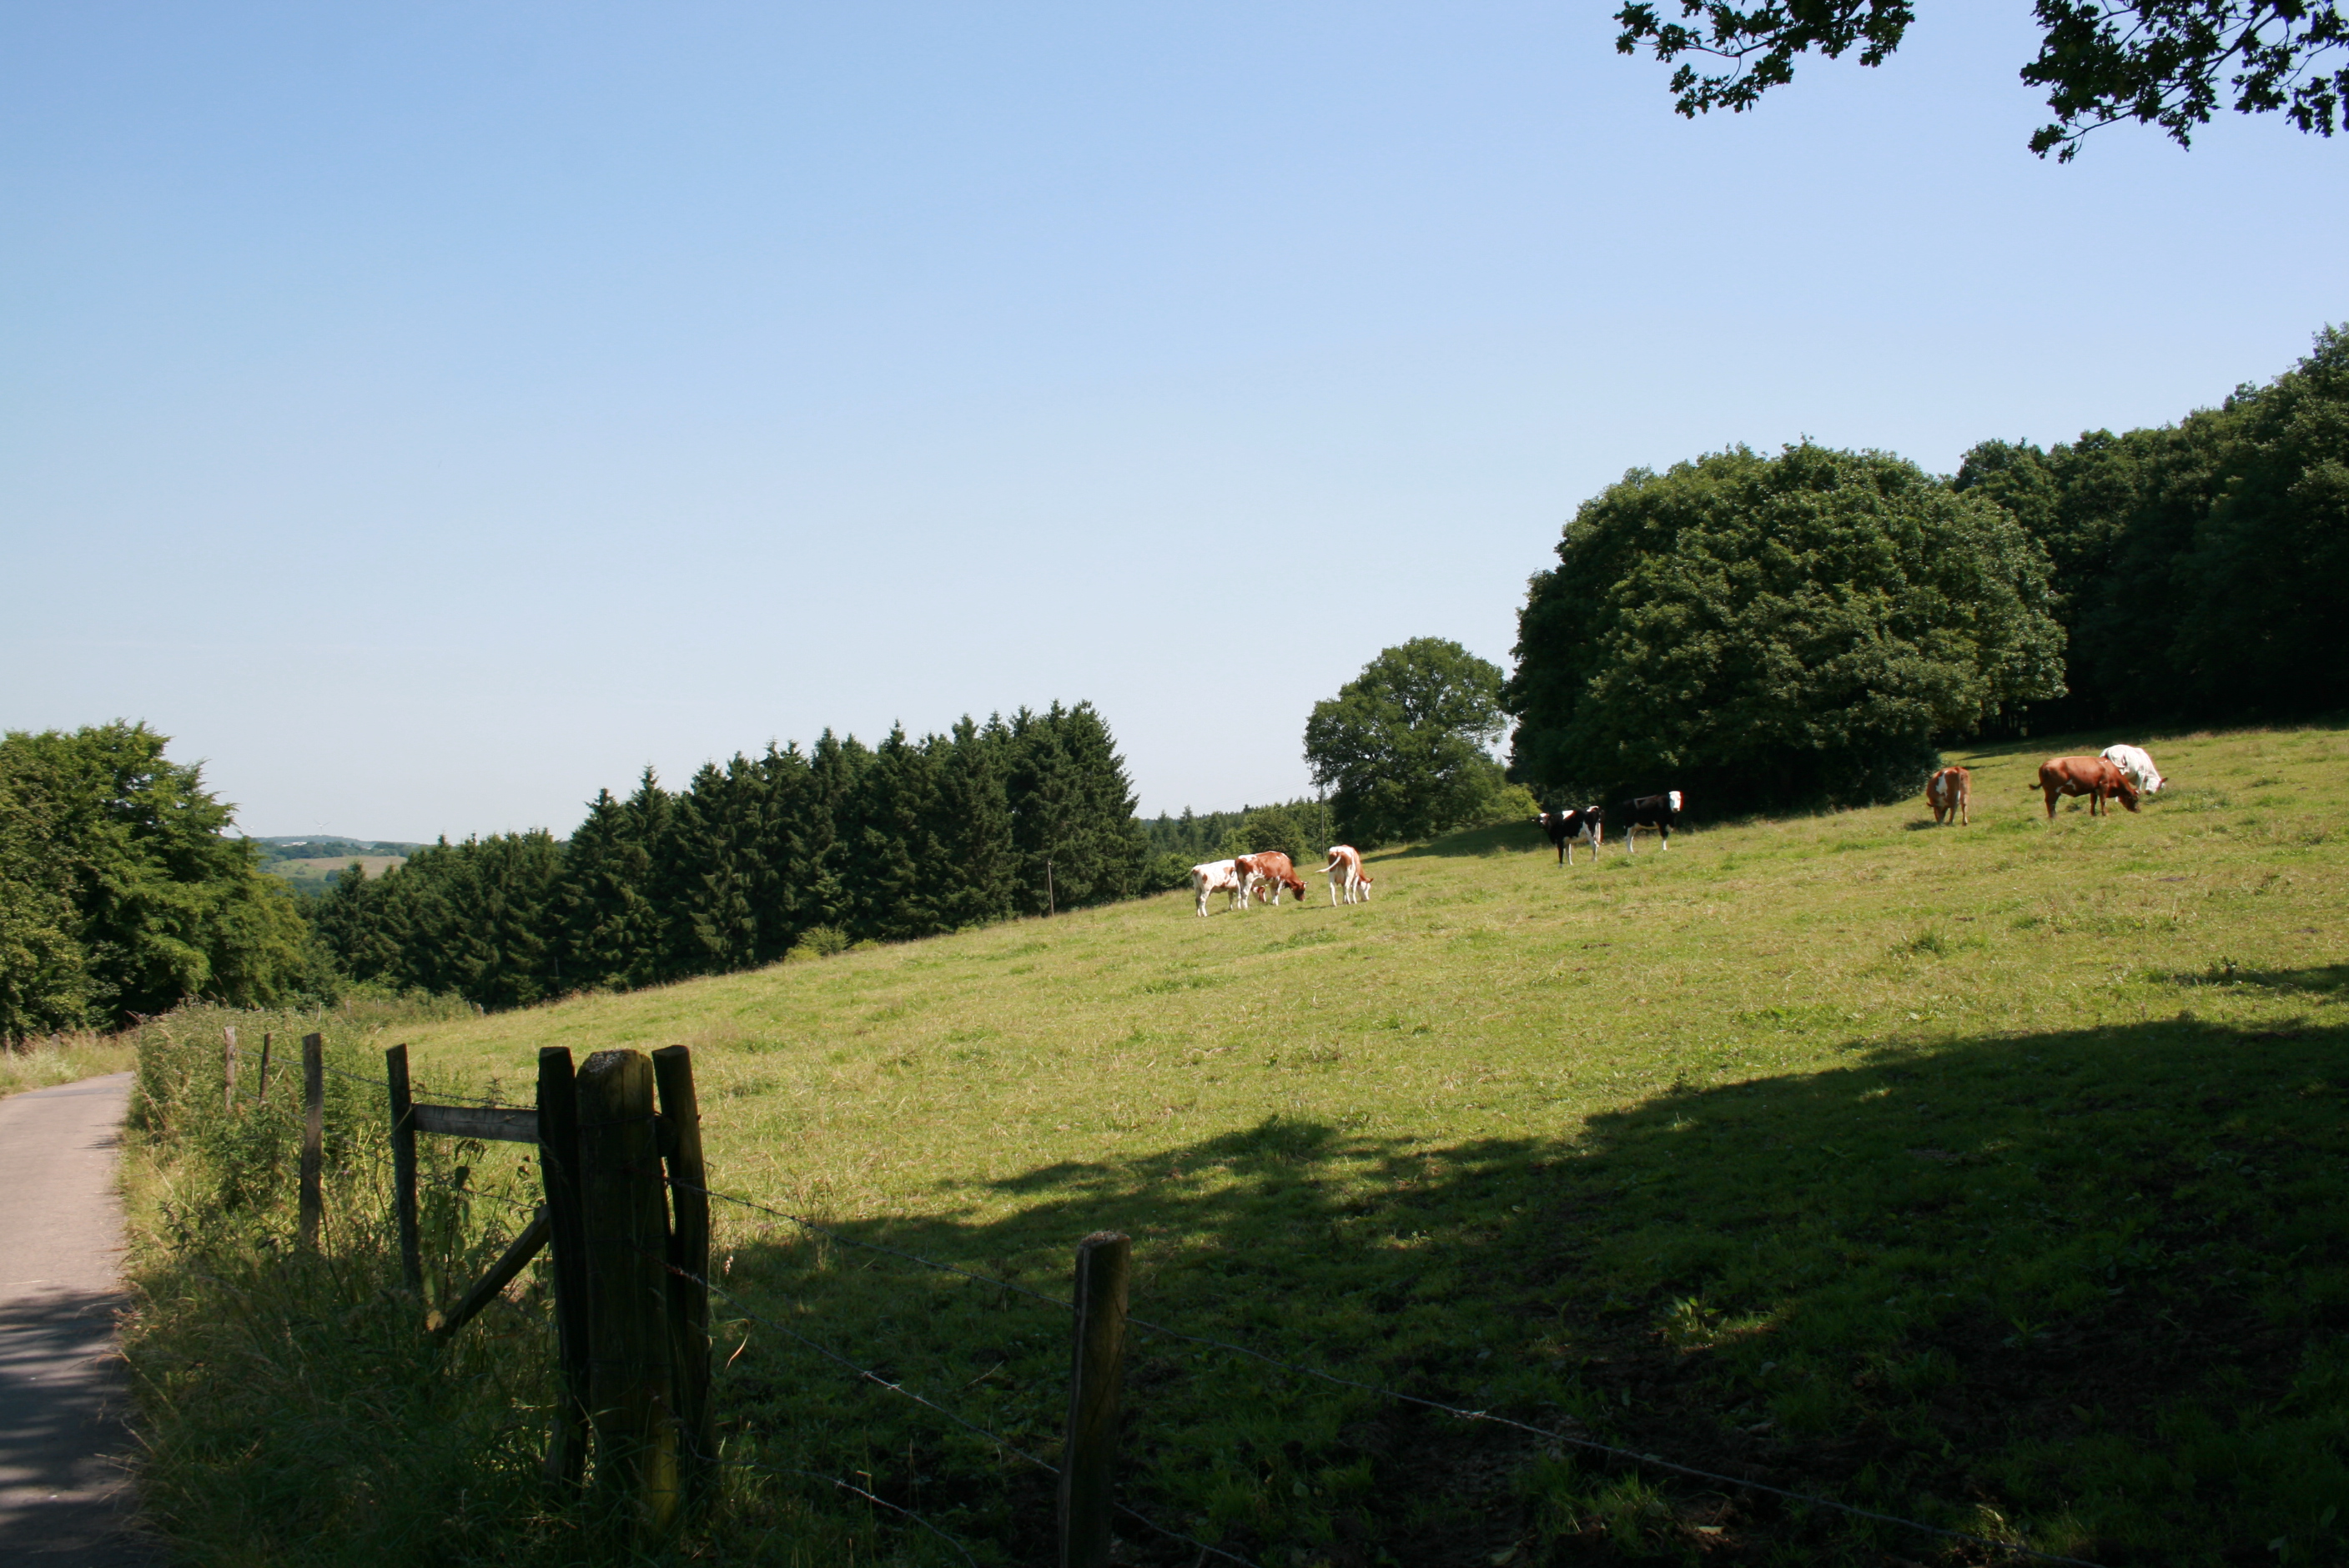 Kühe auf einer Weide mit Bäumen im Hintergrund und blauem Himmel